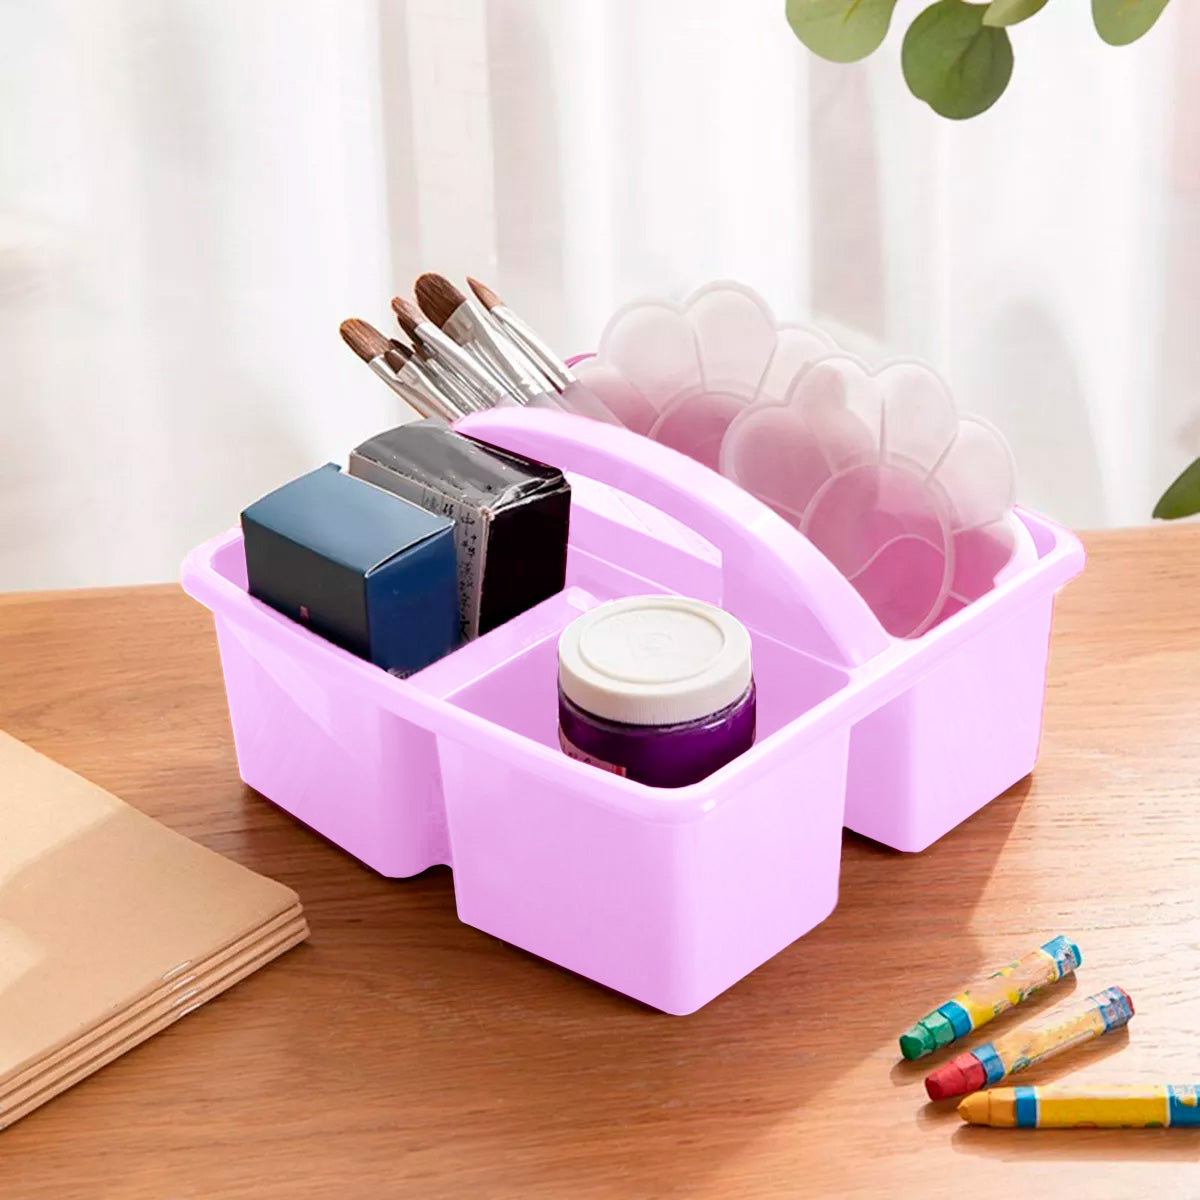 Caja organizadora Plástico, 4 Divisiones color Lila – Waldo's